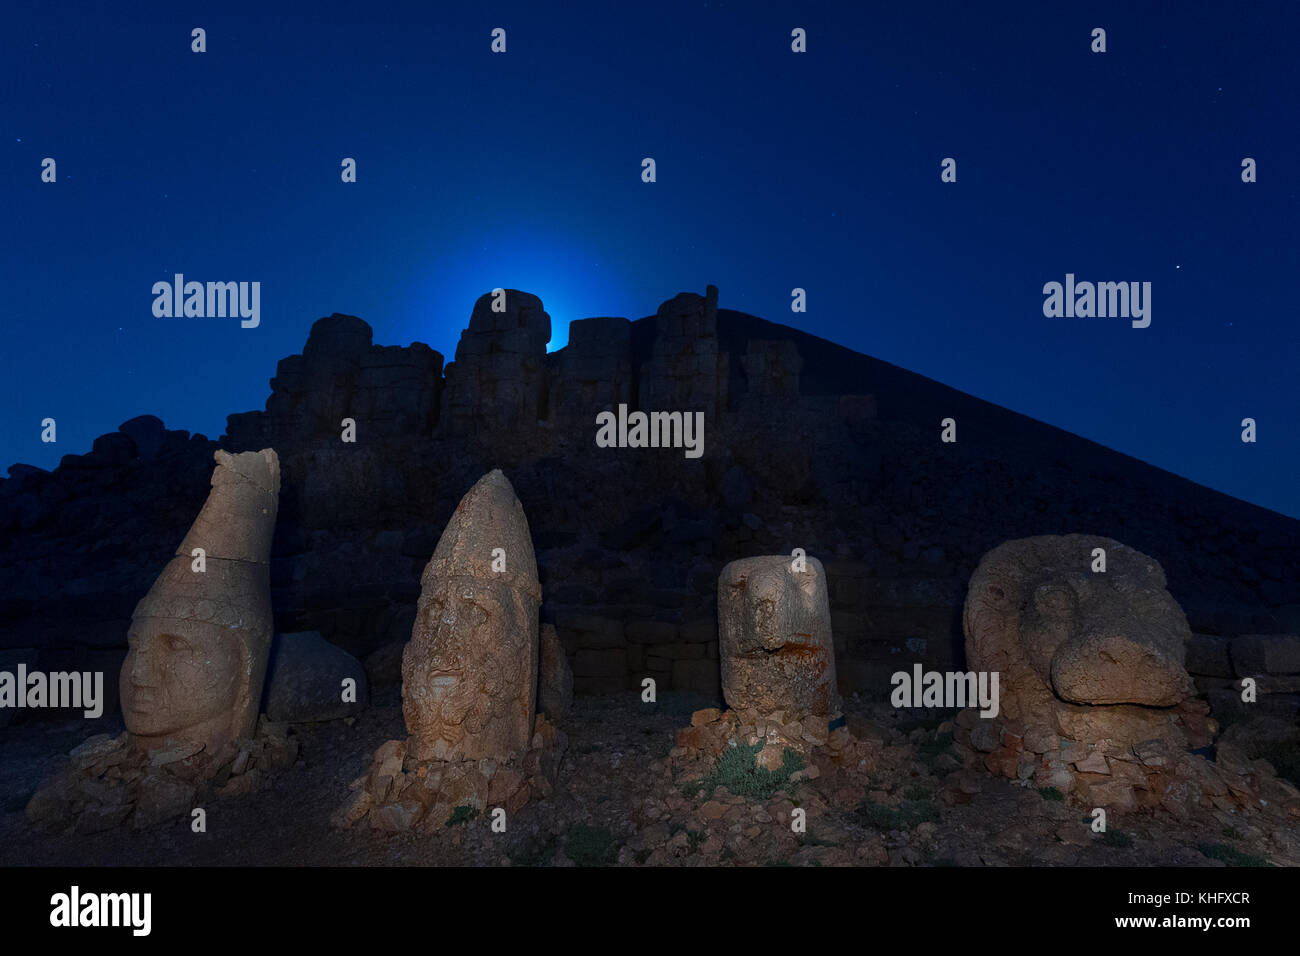 Statues sur la Mt Nemrut, au crépuscule, avec le clair de lune derrière les statues, à Adiyaman, Turquie. Banque D'Images